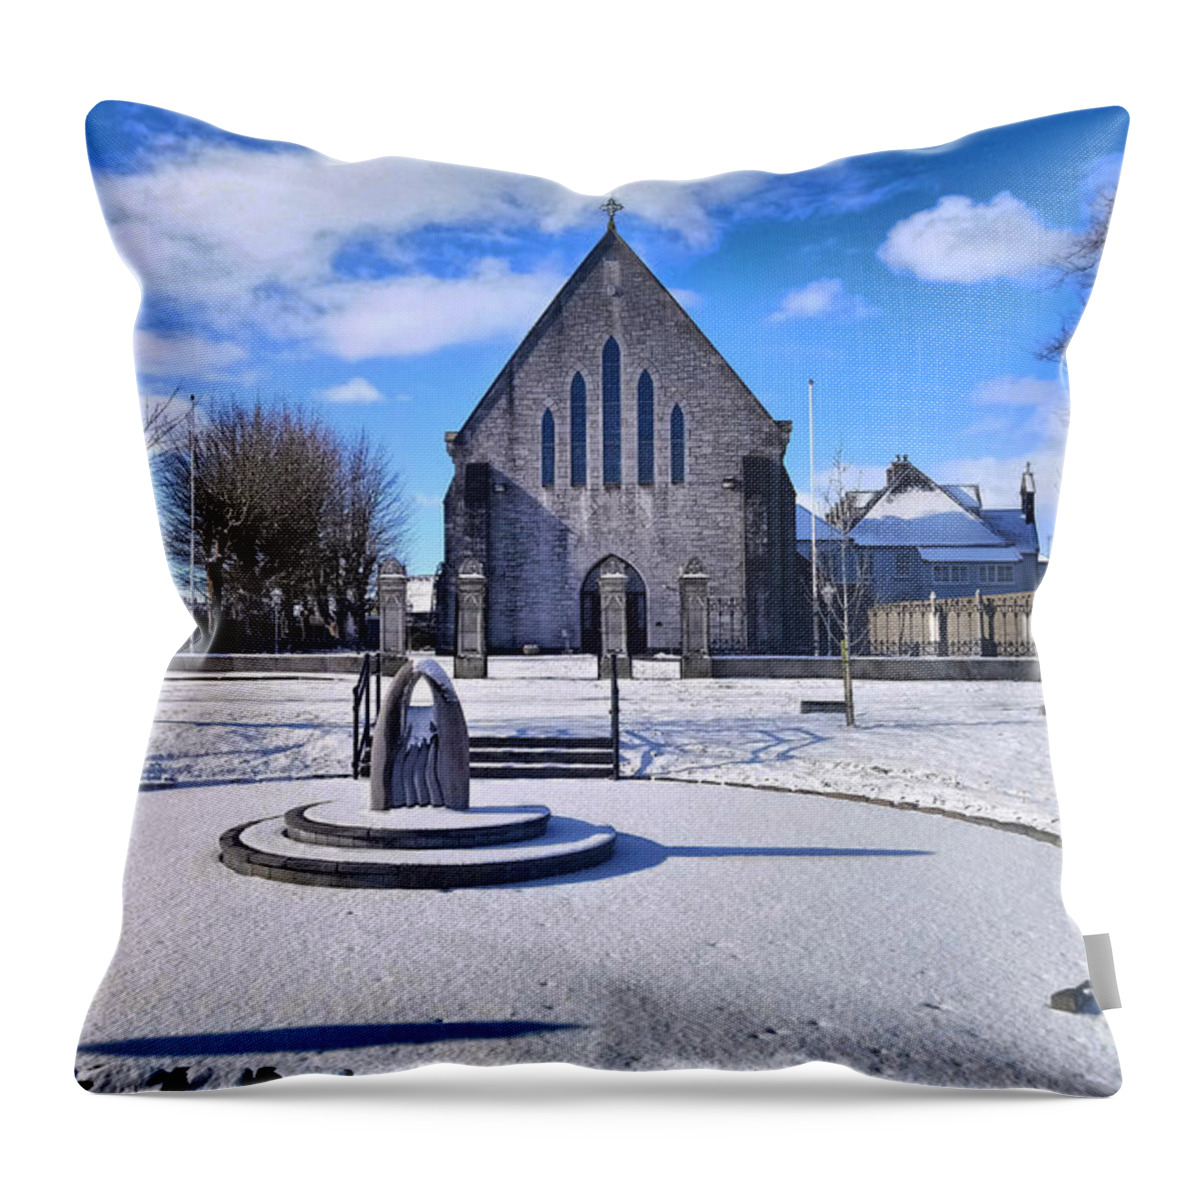 Church Of The Assumption Throw Pillow featuring the photograph Church of the Assumption, Mooncoin by Joe Cashin